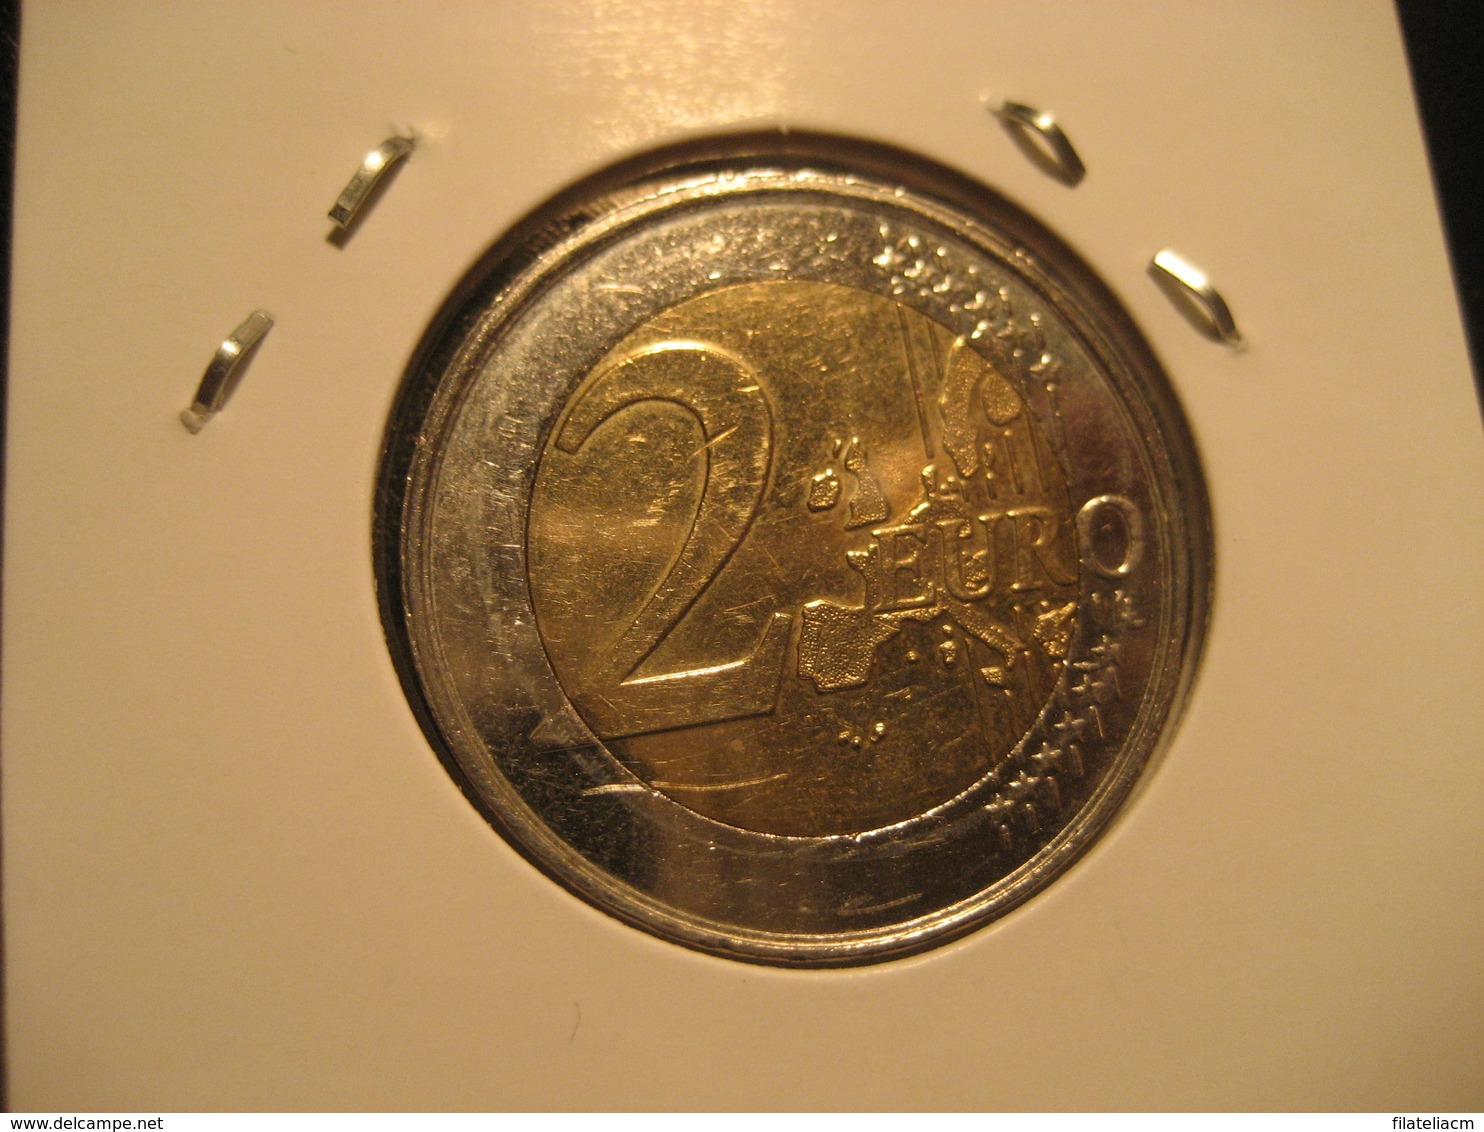 2 EURO 2005 Good Condition BELGIUM Eur Euros Coin BELGIQUE BELGIE - Bélgica